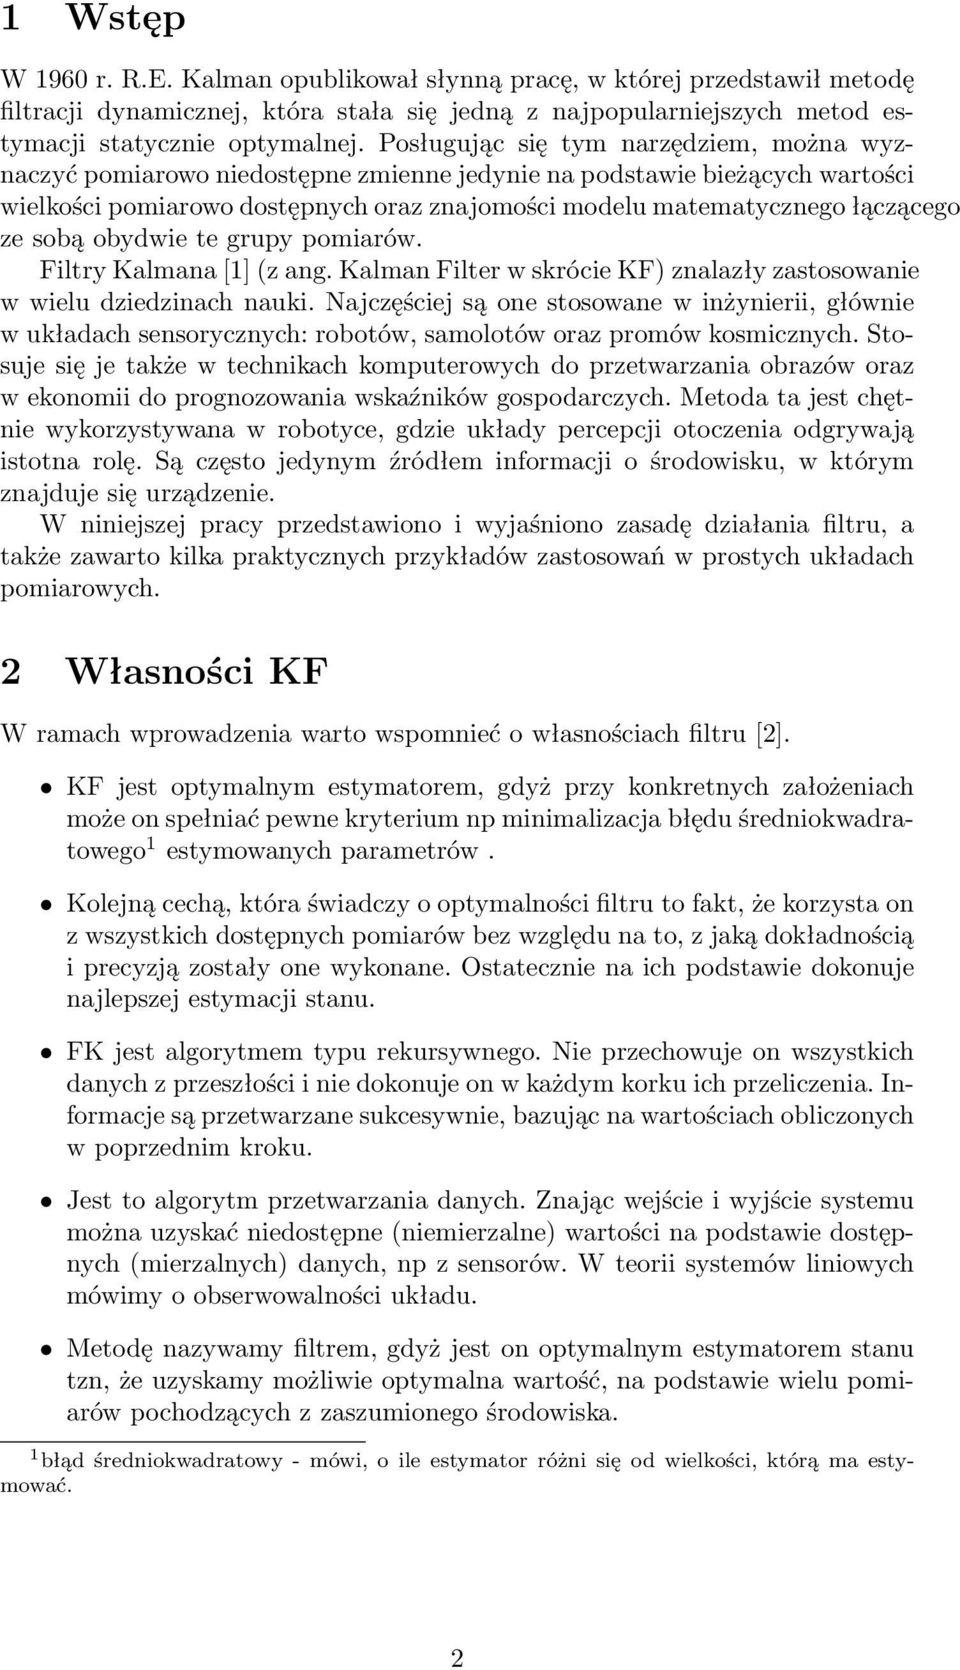 sobą obydwie te grupy pomiarów. Filtry Kalmana [1] (z ang. Kalman Filter w skrócie KF) znalazły zastosowanie w wielu dziedzinach nauki.